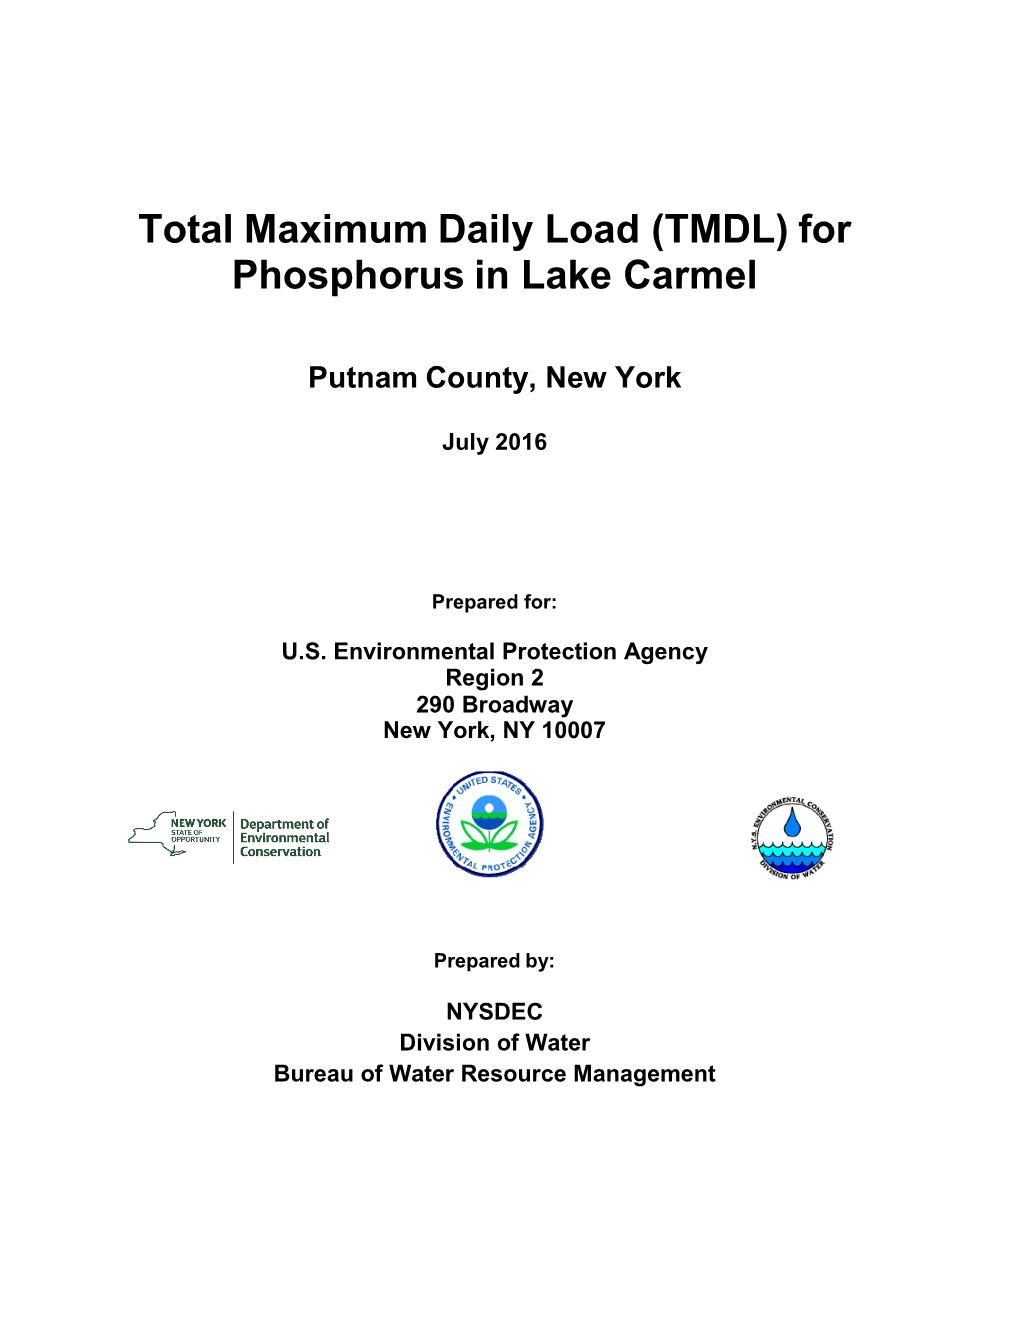 Total Maximum Daily Load (TMDL) for Phosphorus in Lake Carmel Final